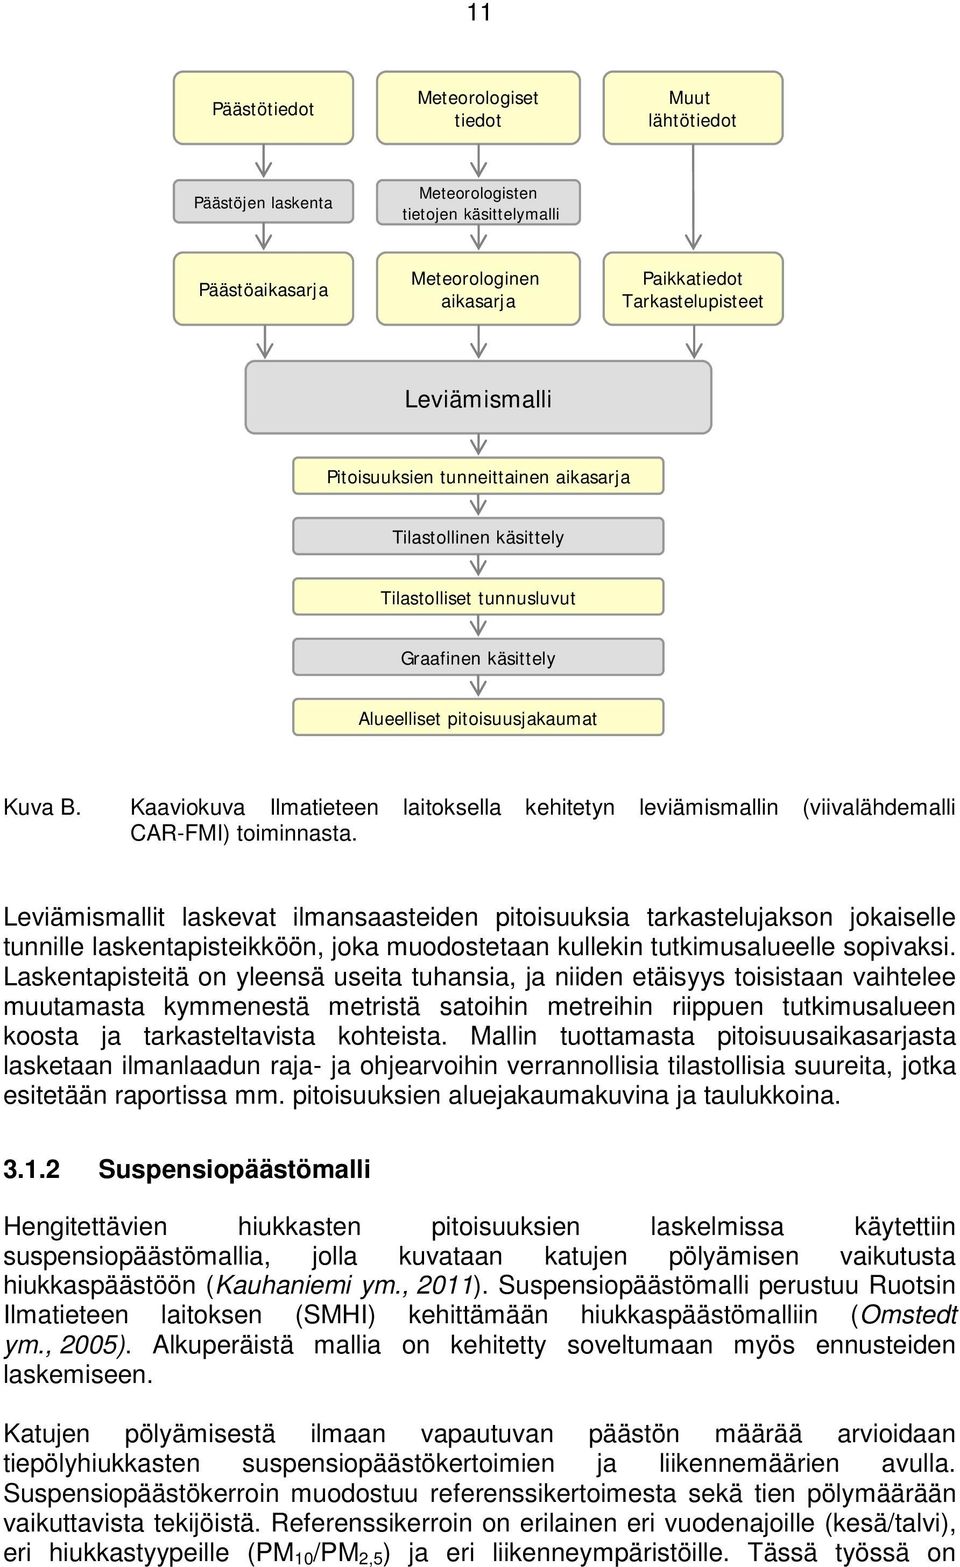 Kaaviokuva Ilmatieteen laitoksella kehitetyn leviämismallin (viivalähdemalli CAR-FMI) toiminnasta.